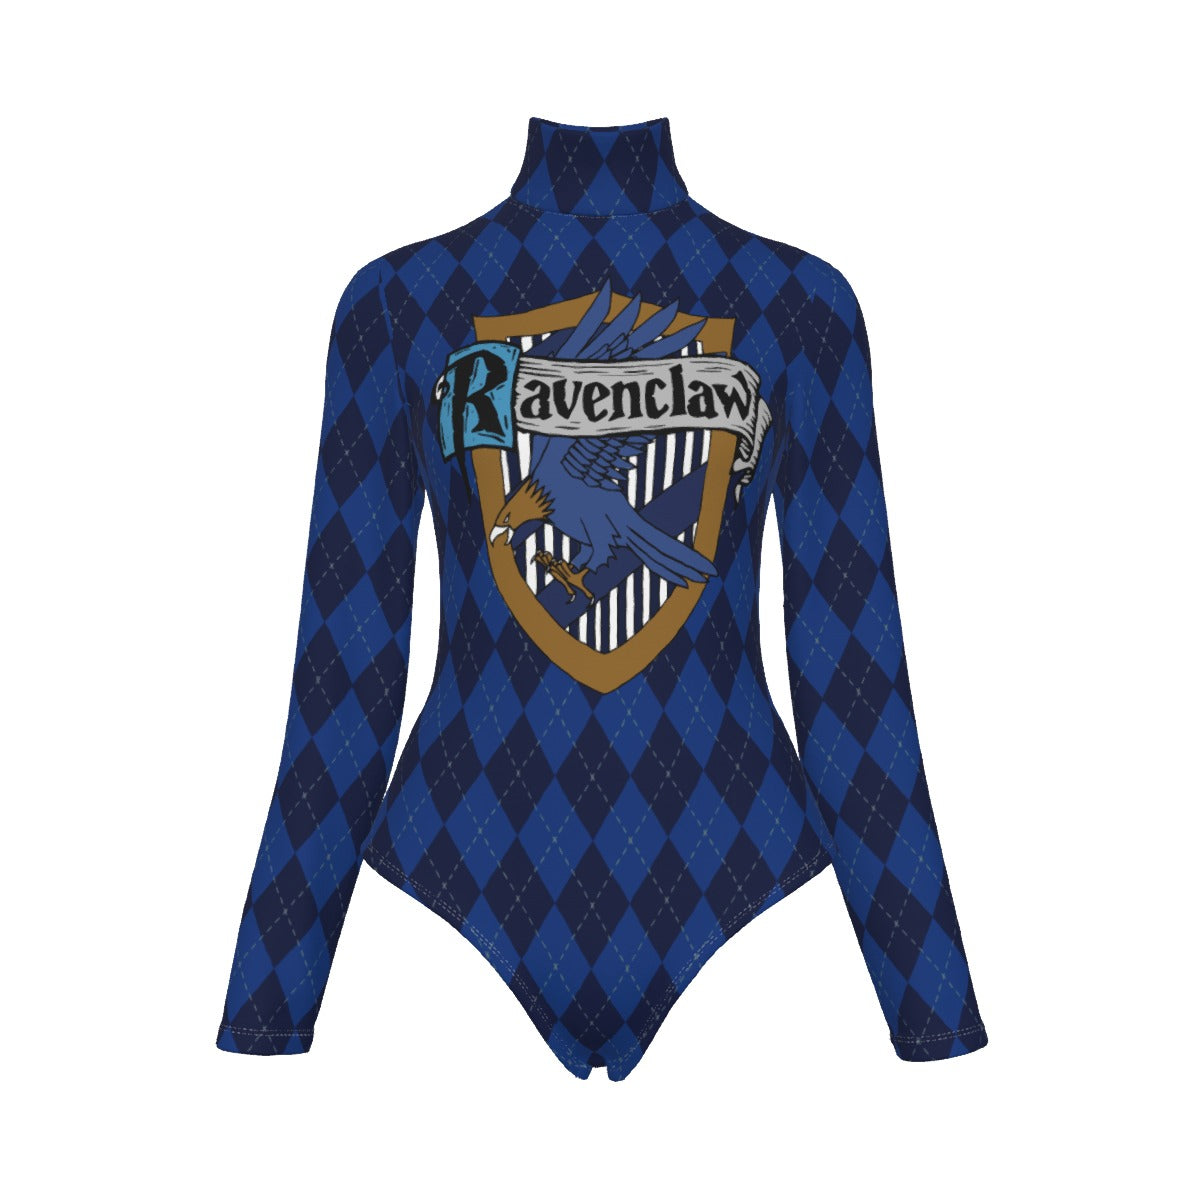 Hogwarts - Ravenclaw Long Sleeve Bodysuit